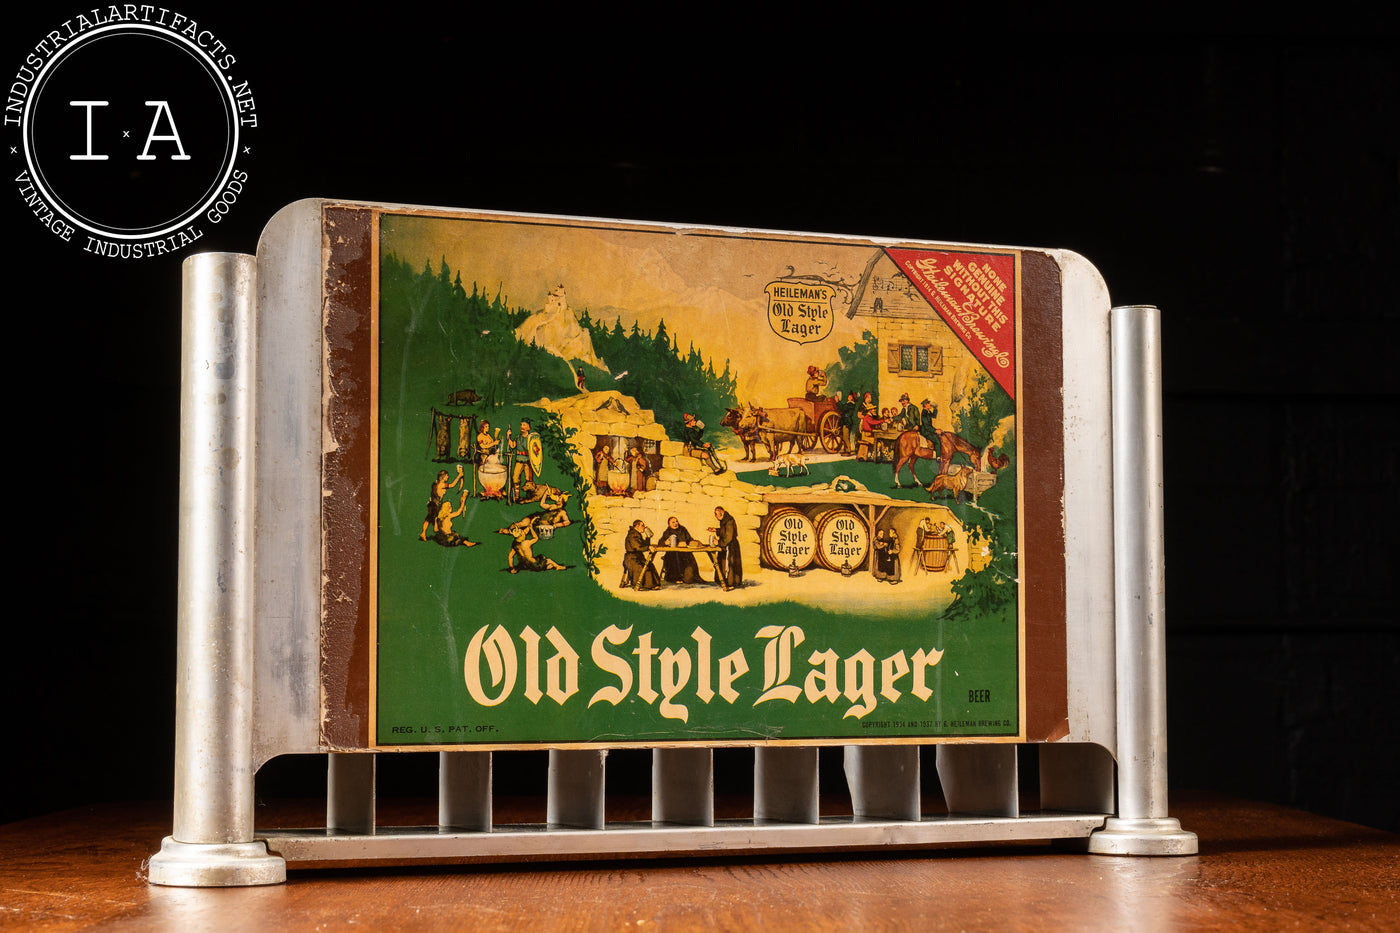 c. 1937 Old Style Beer POS Cigarette Dispenser